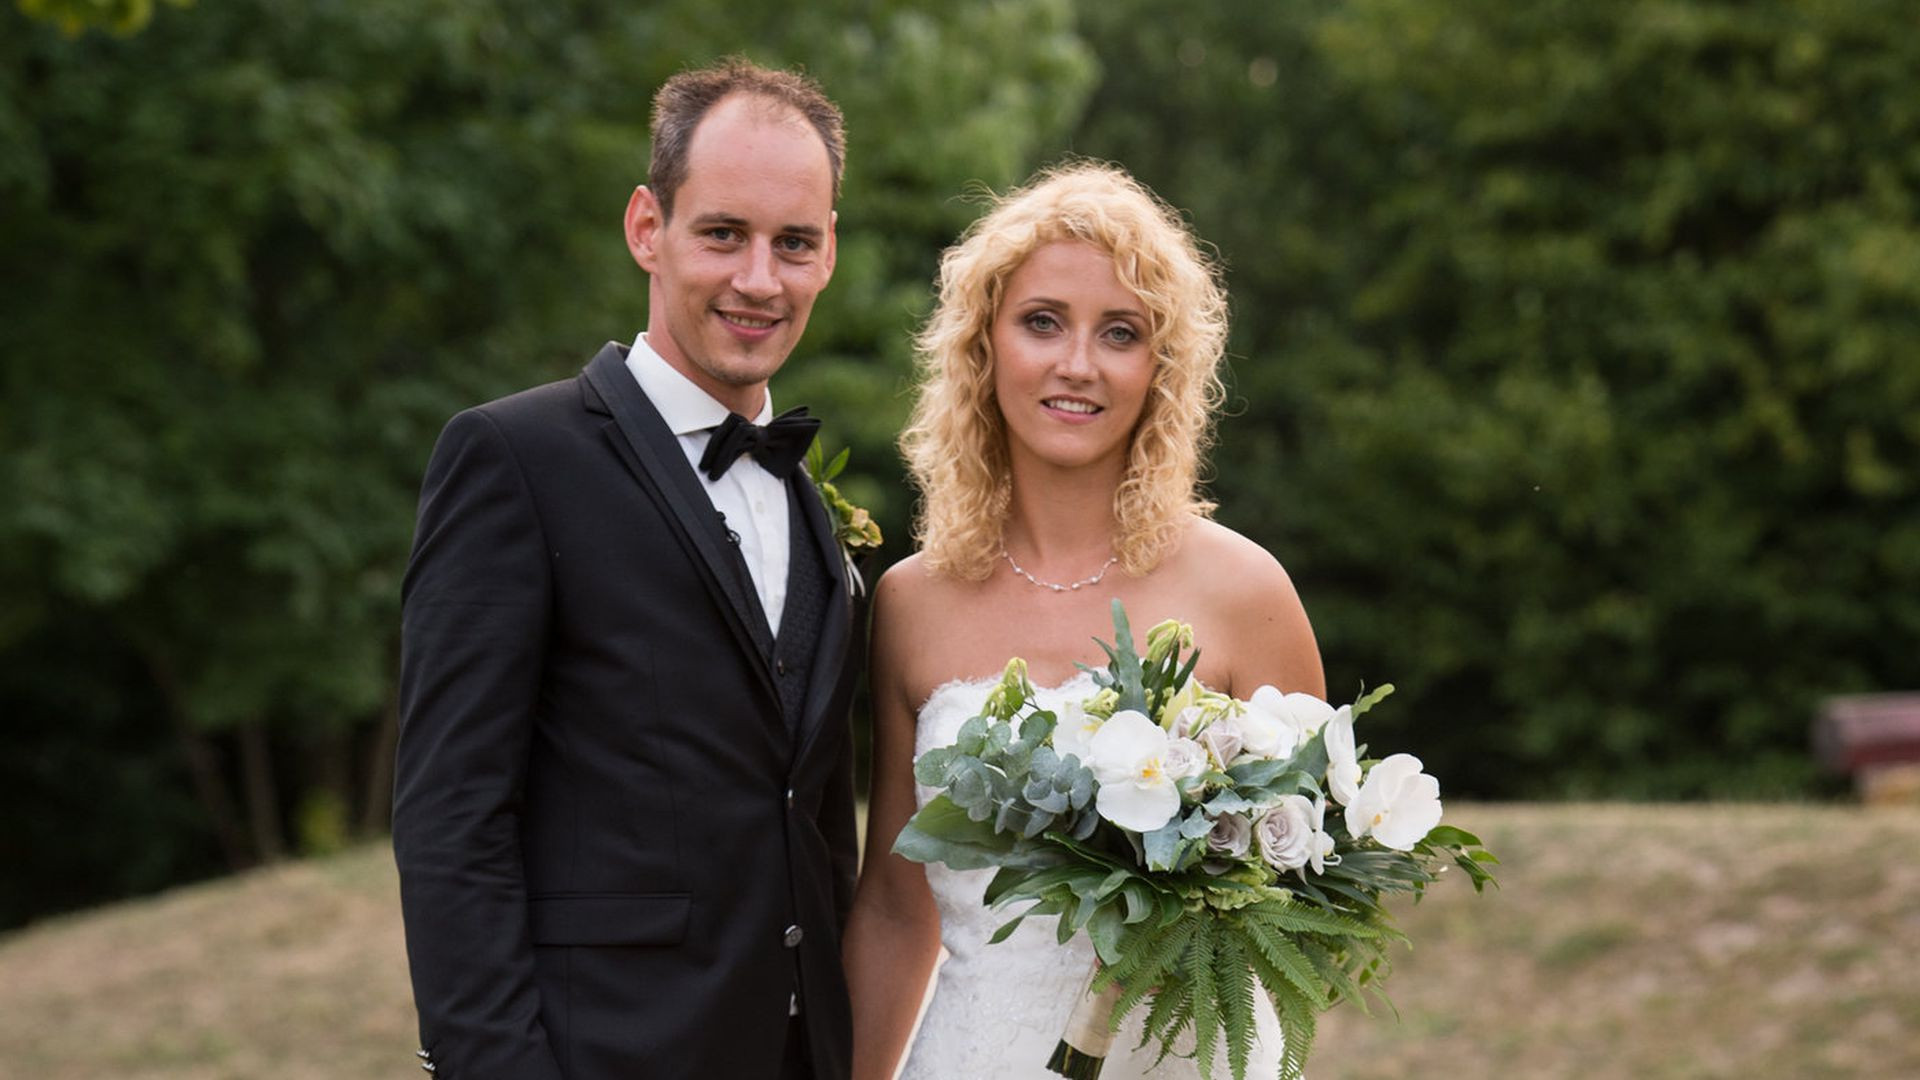 Hochzeit Auf Den Ersten Blick Raik
 Honeymoon Zwischenfall Krise bei HadeB Selina und Steve